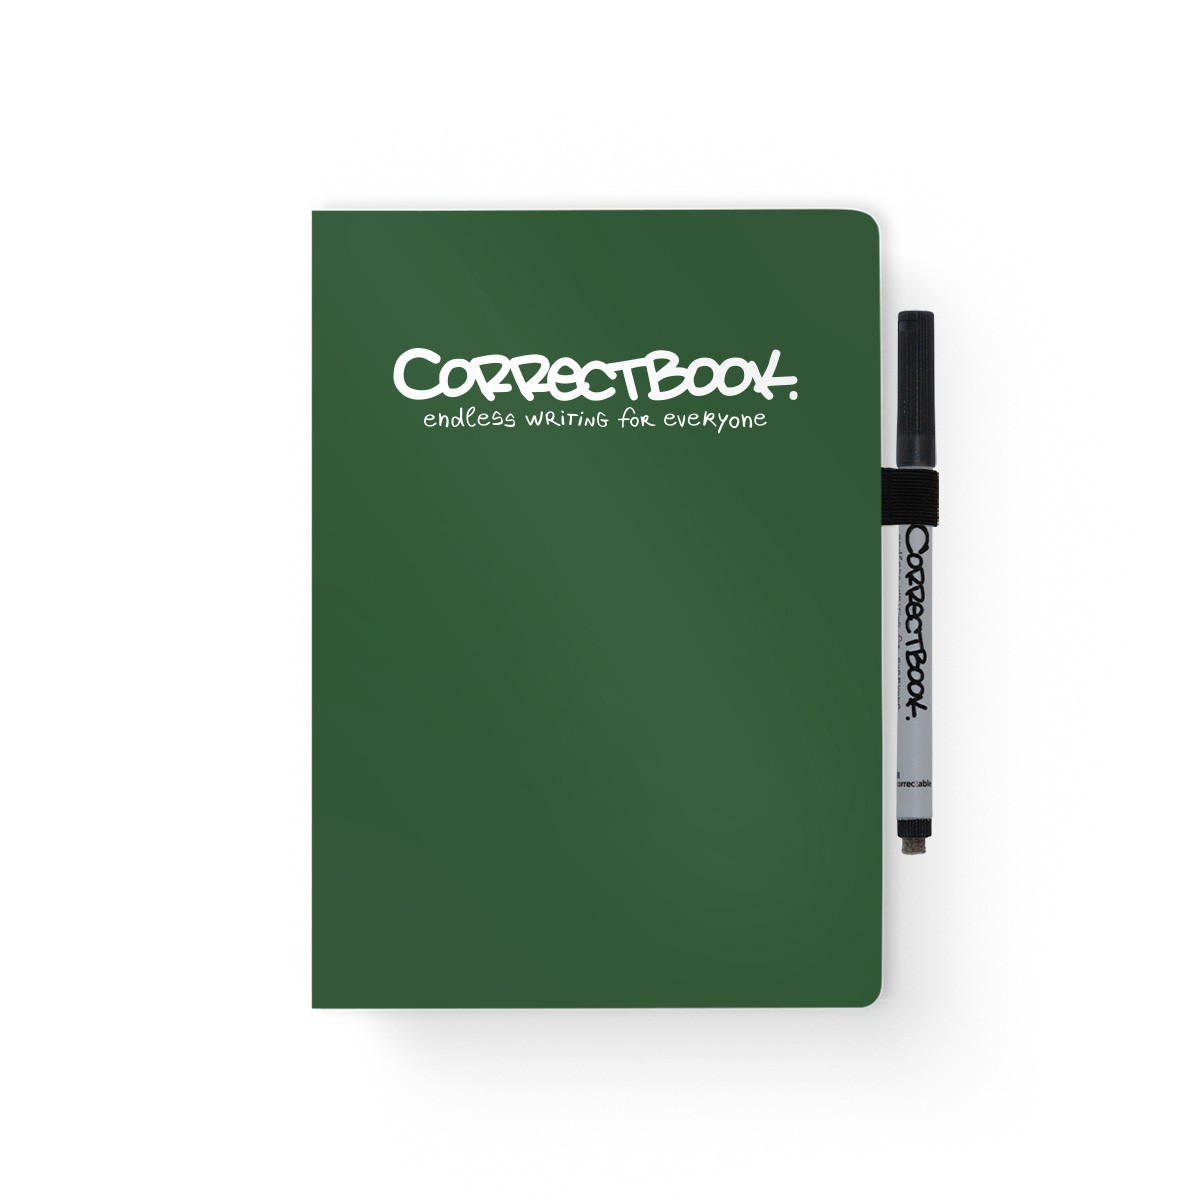 Correctbook A5 Scratch Mix Forest Green